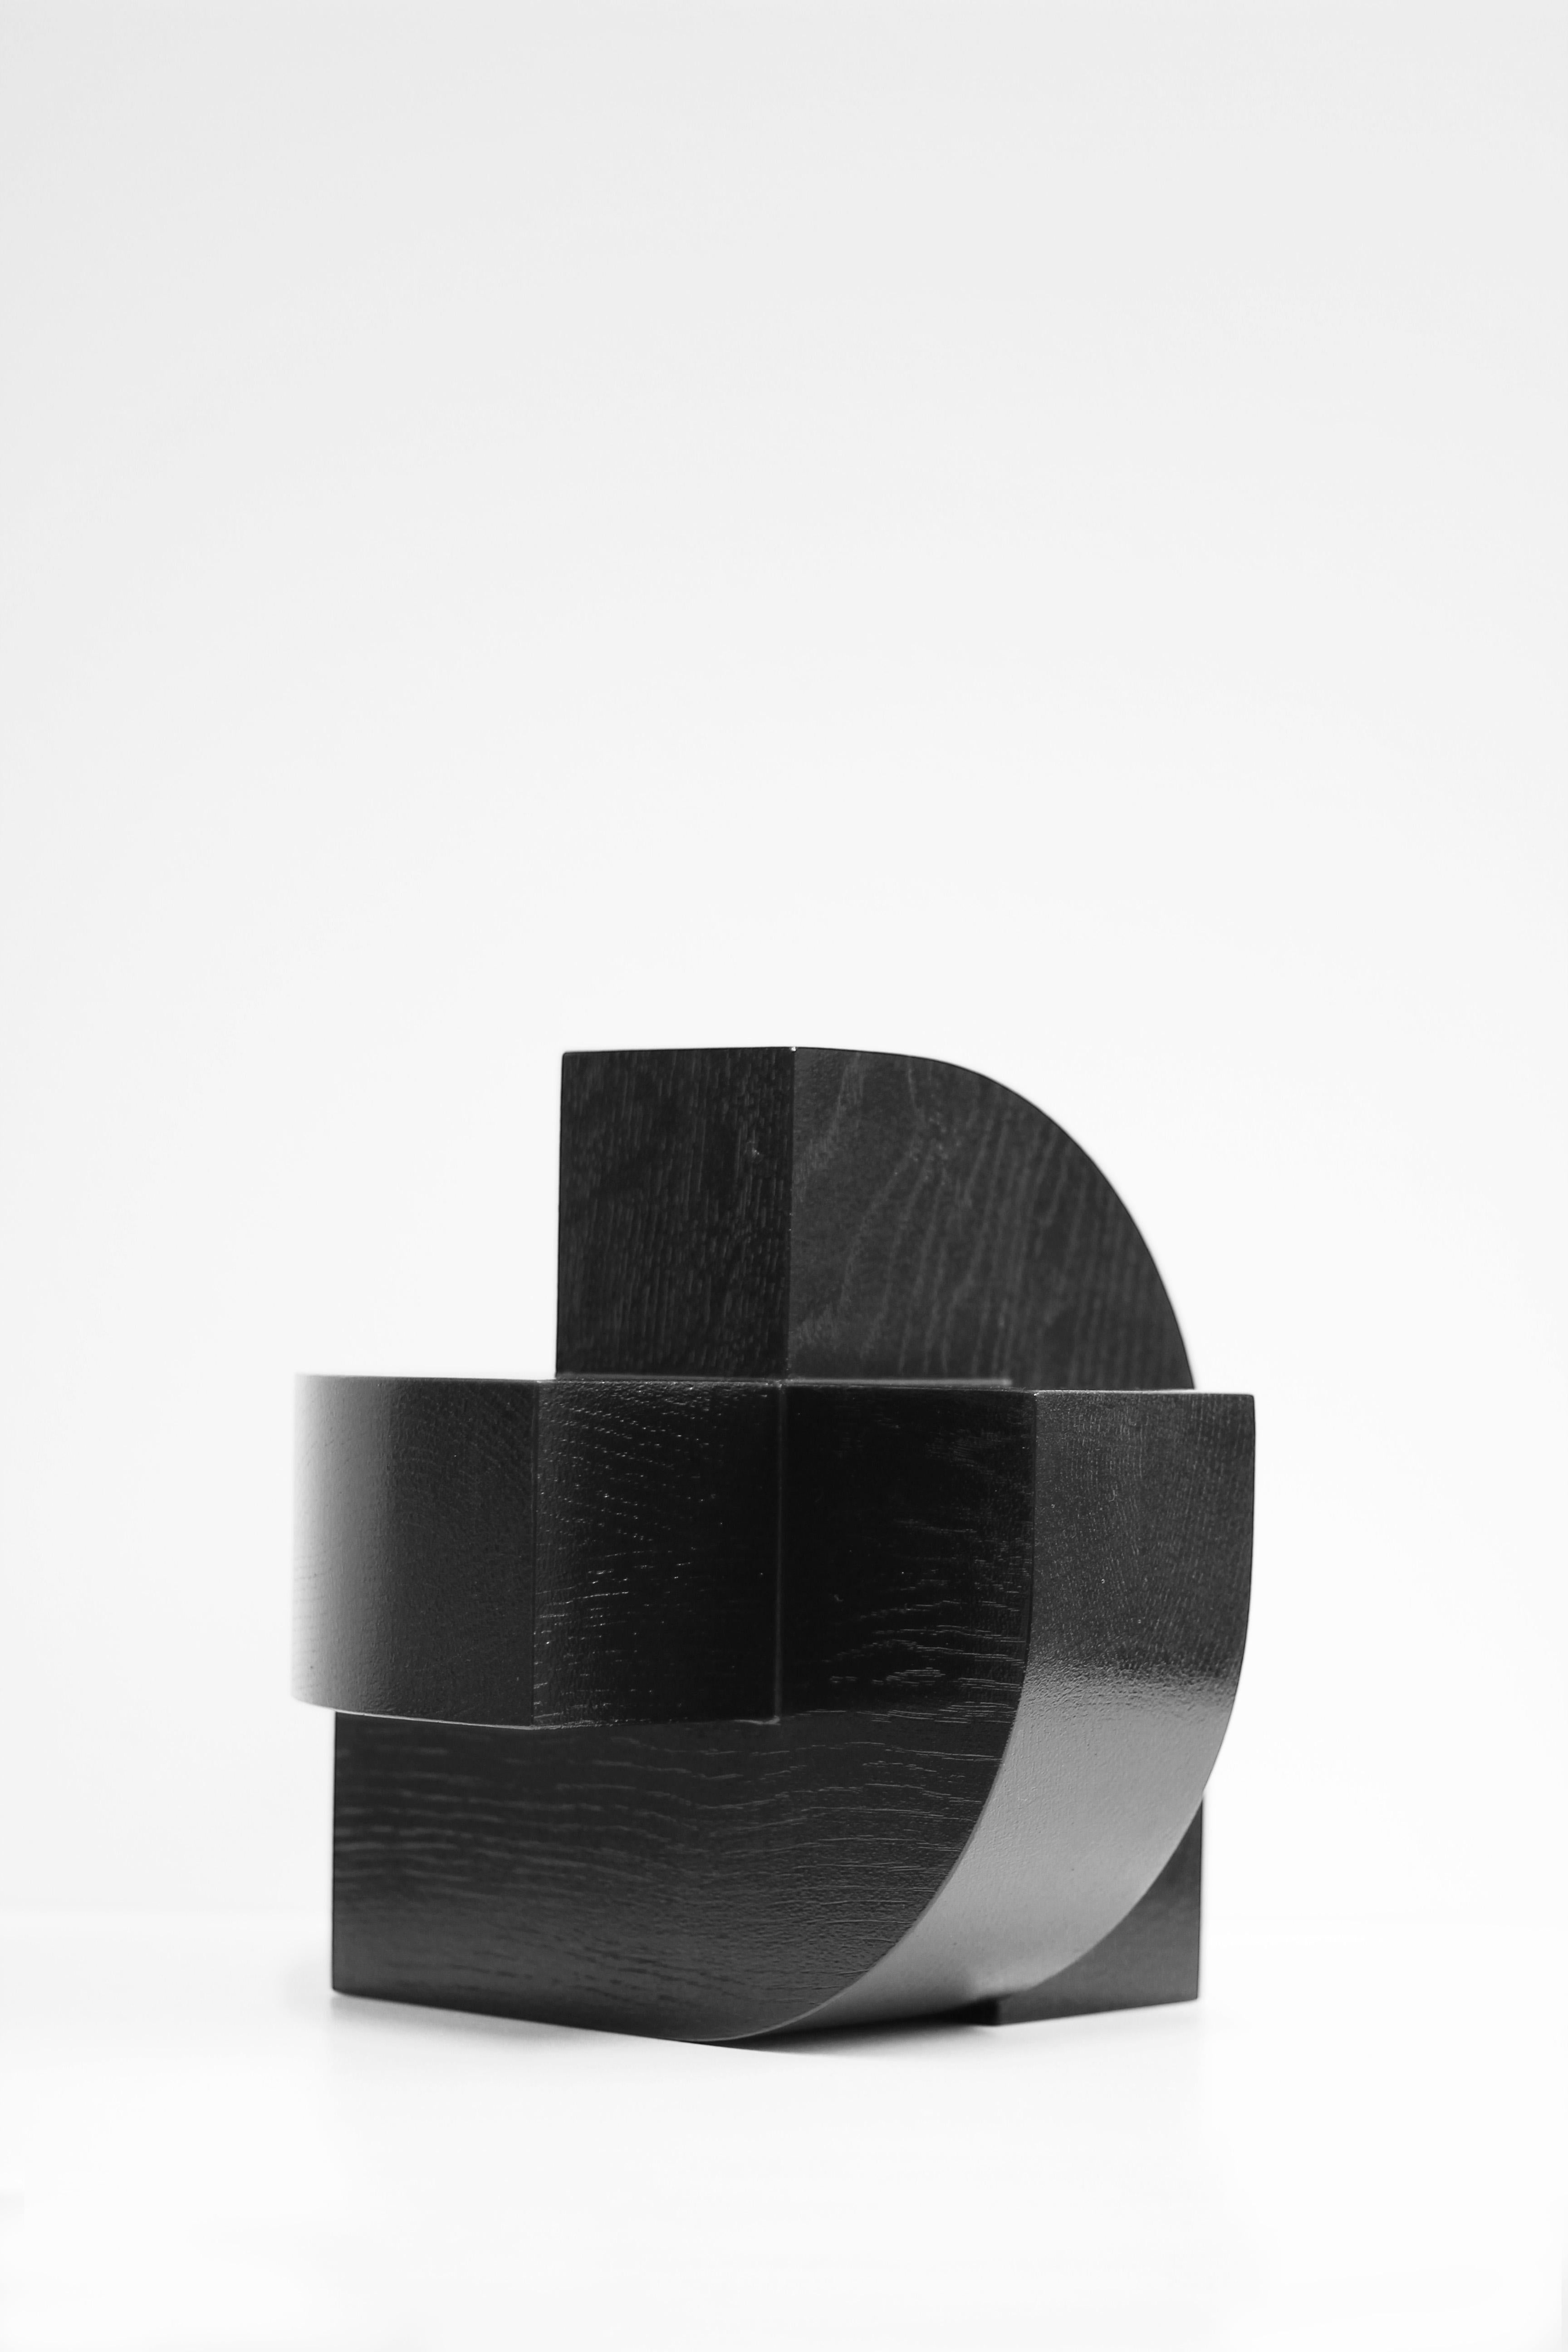 Veneer Black solid oak sculpture, X4 J, by Dutch Studio Verbaan For Sale